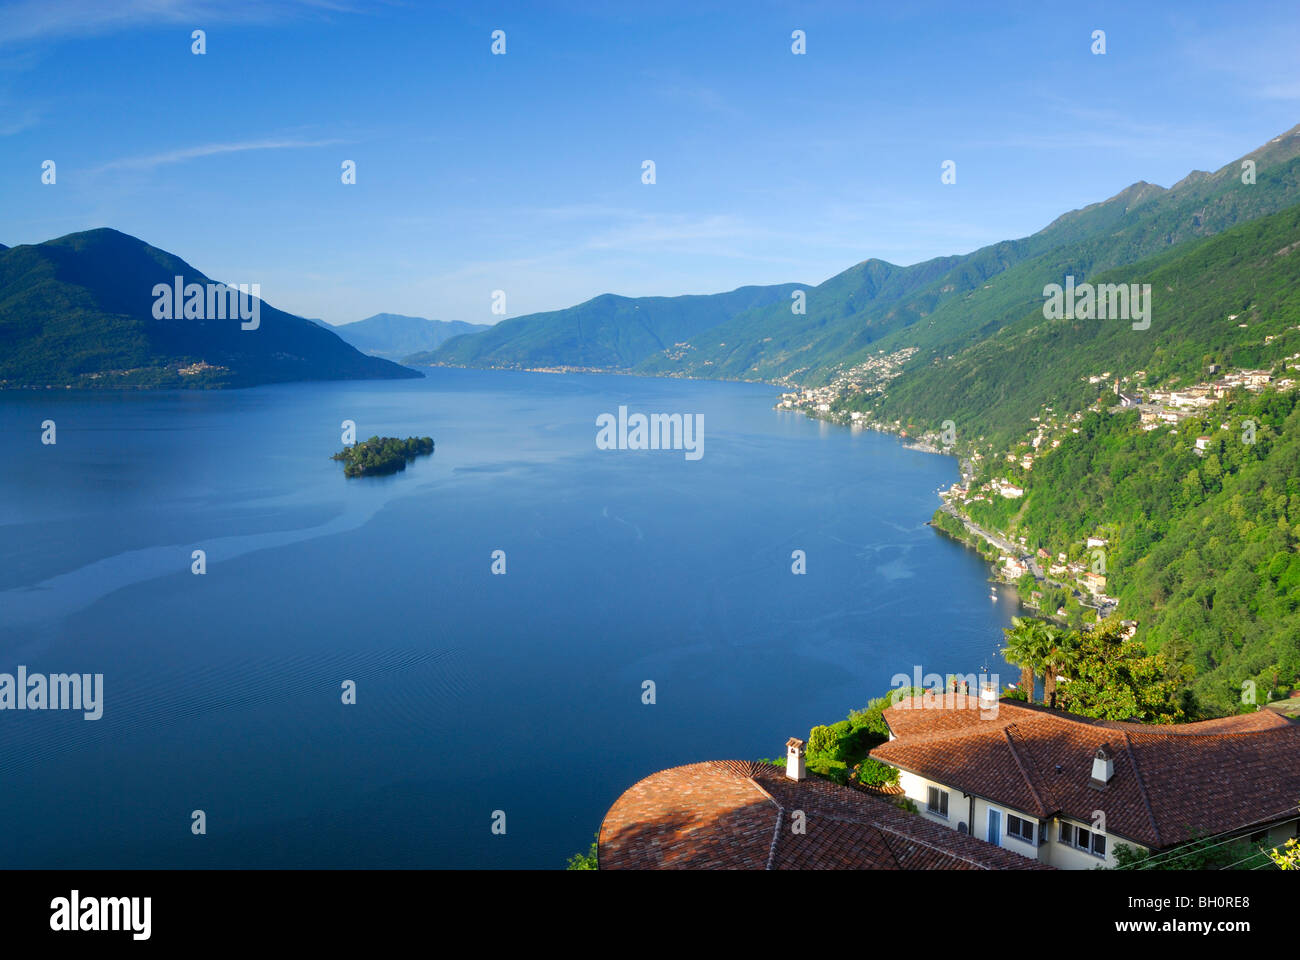 Lake Maggiore with isle of Brissago, Isole di Brissago, Ronco sopra Ascona, lake Maggiore, Lago Maggiore, Ticino, Switzerland Stock Photo